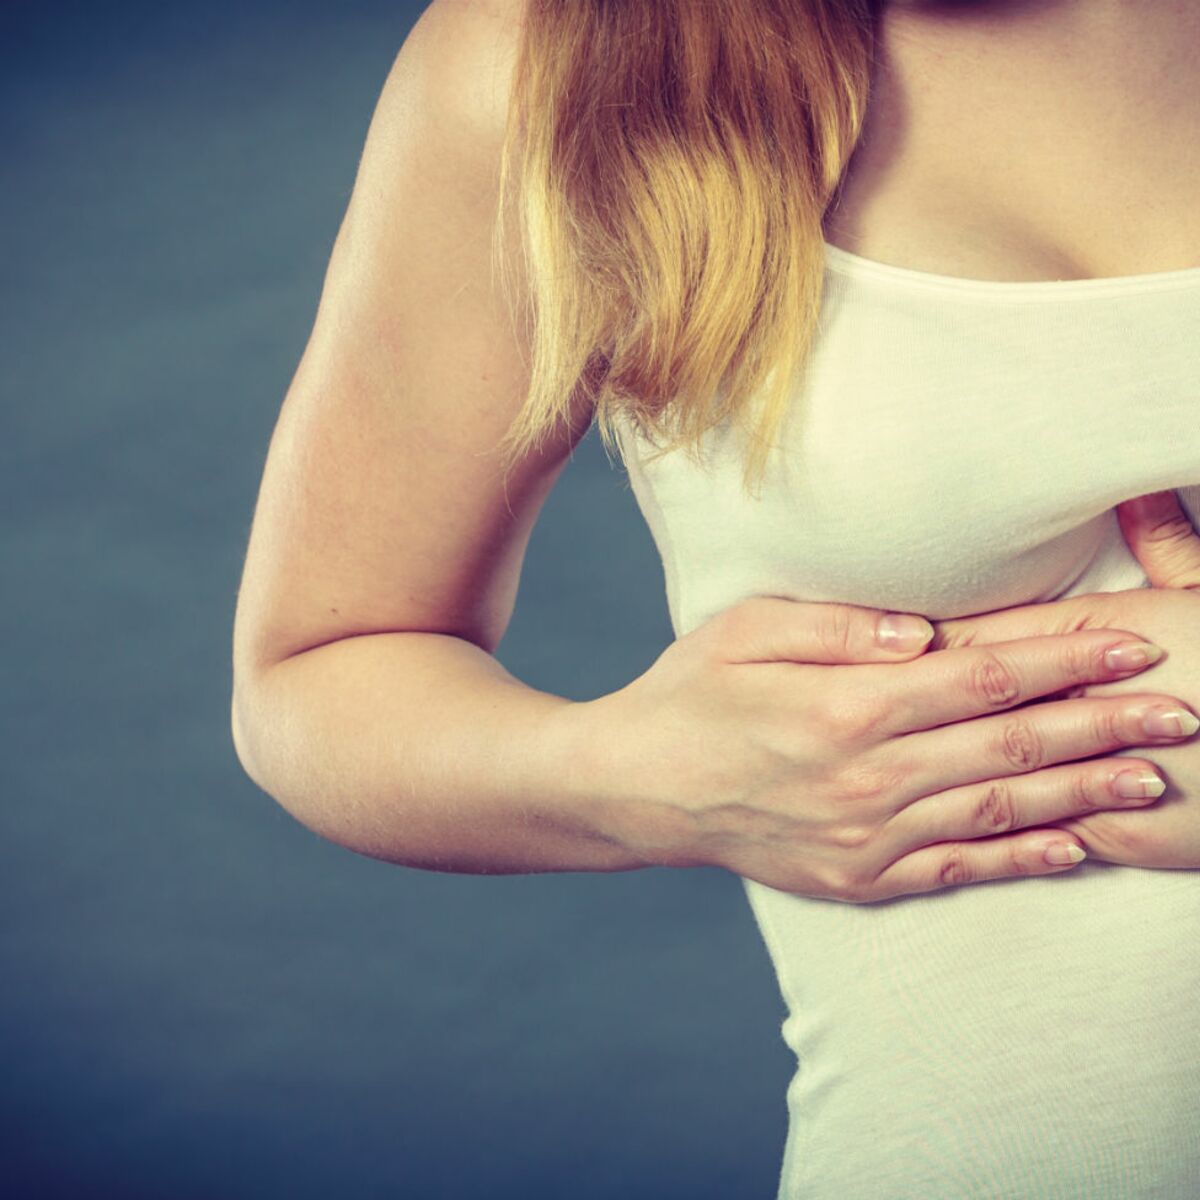 Douleurs mammaires, quand s'inquiéter ? : Femme Actuelle Le MAG